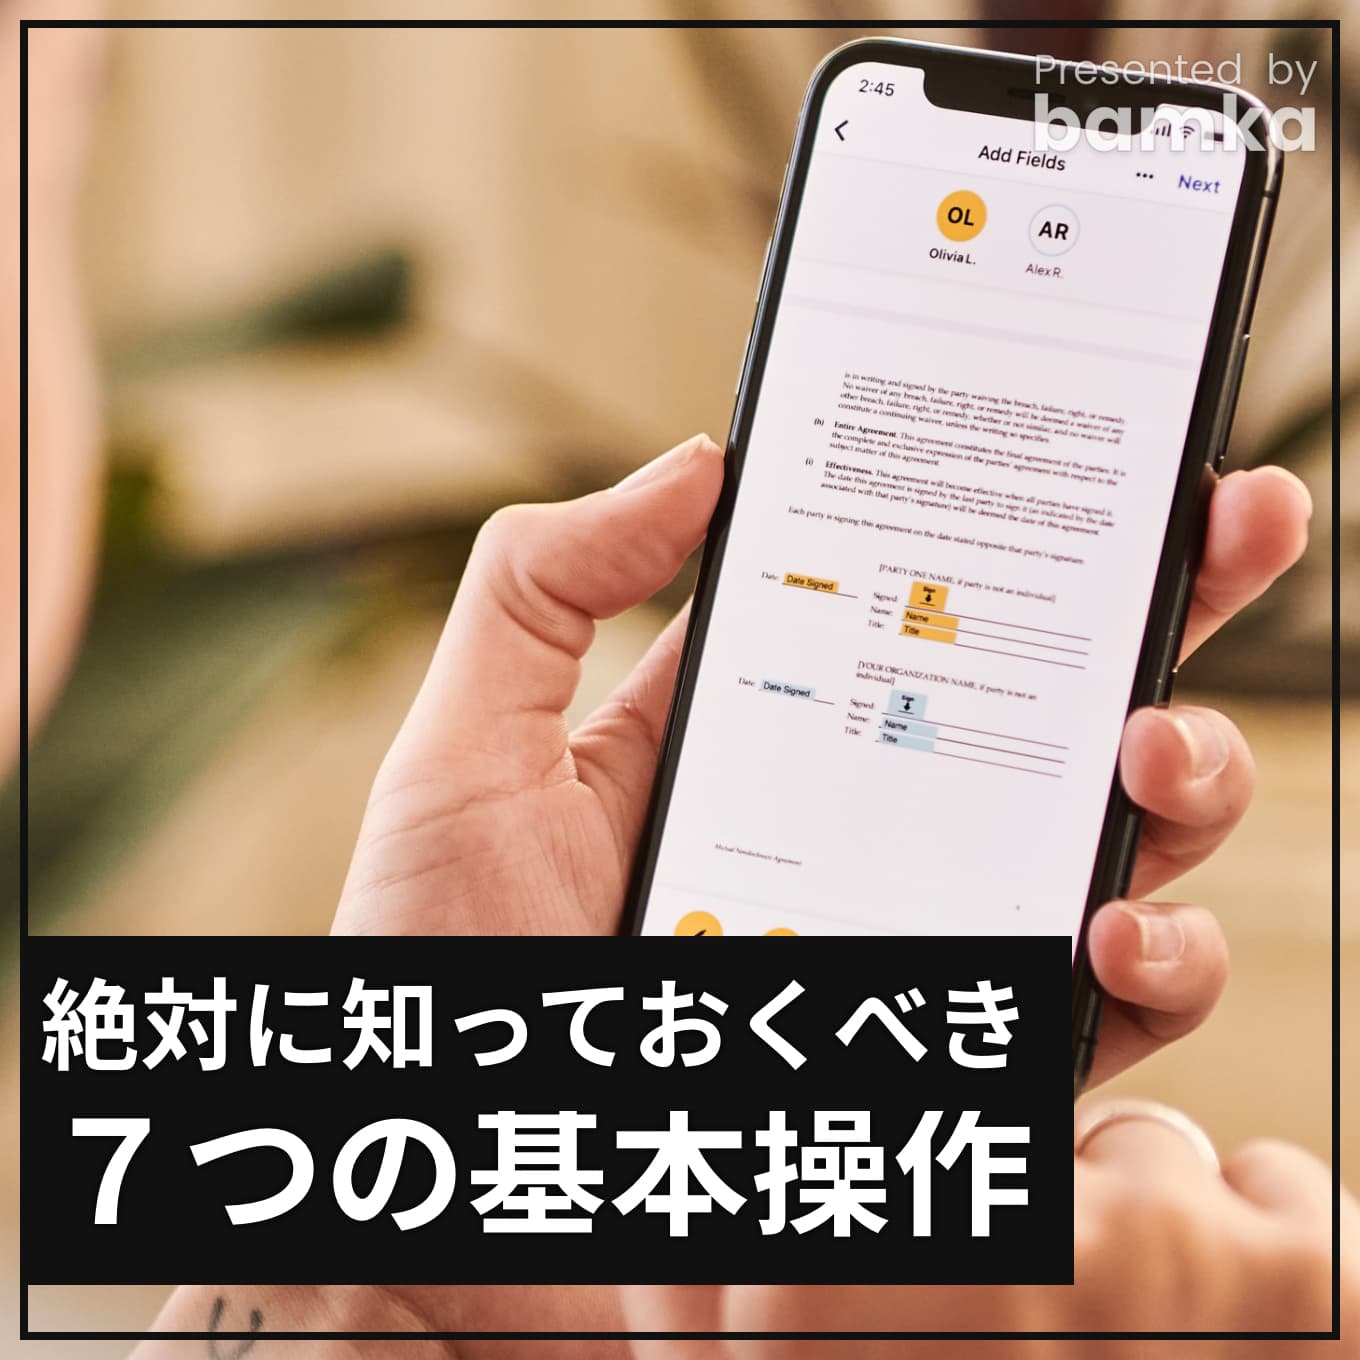 iphone-manual-7sen